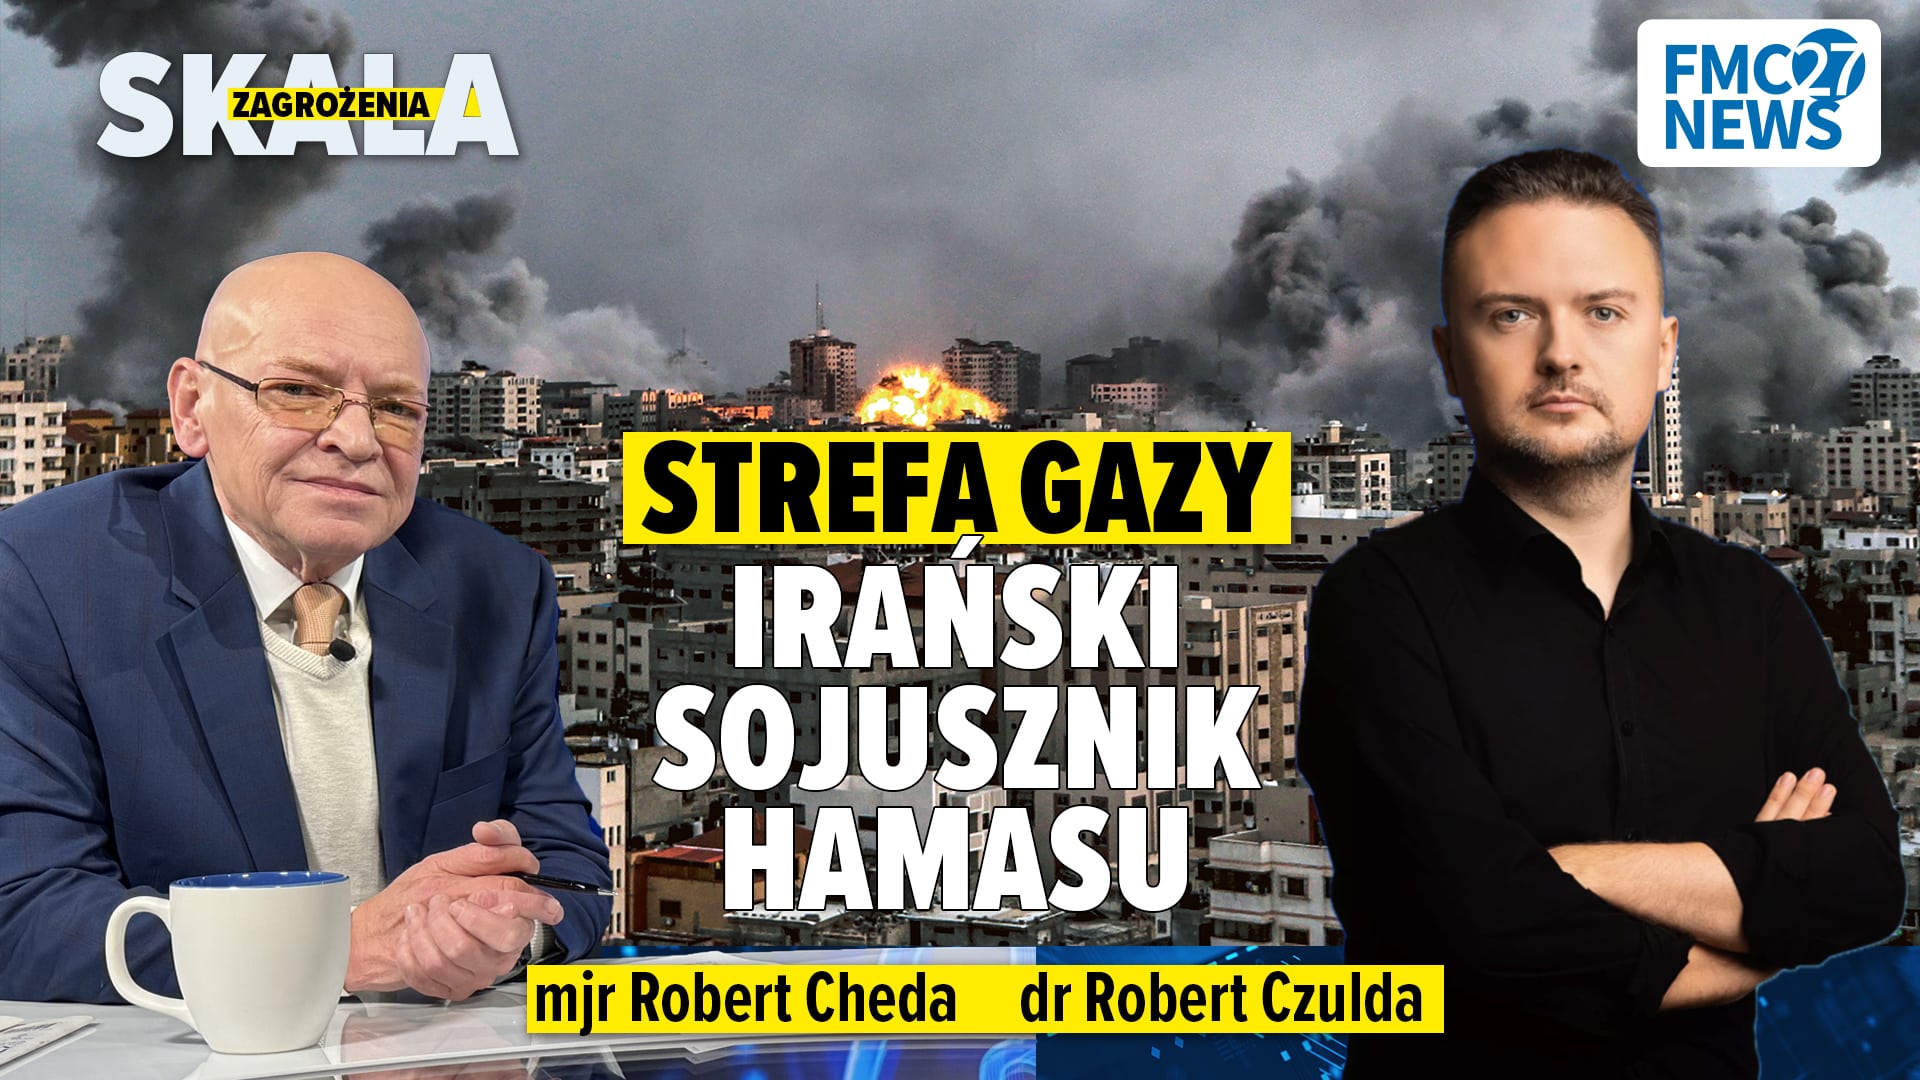 Dwóch ekspertów prowadzi rozmowę na temat organizacji Hamas